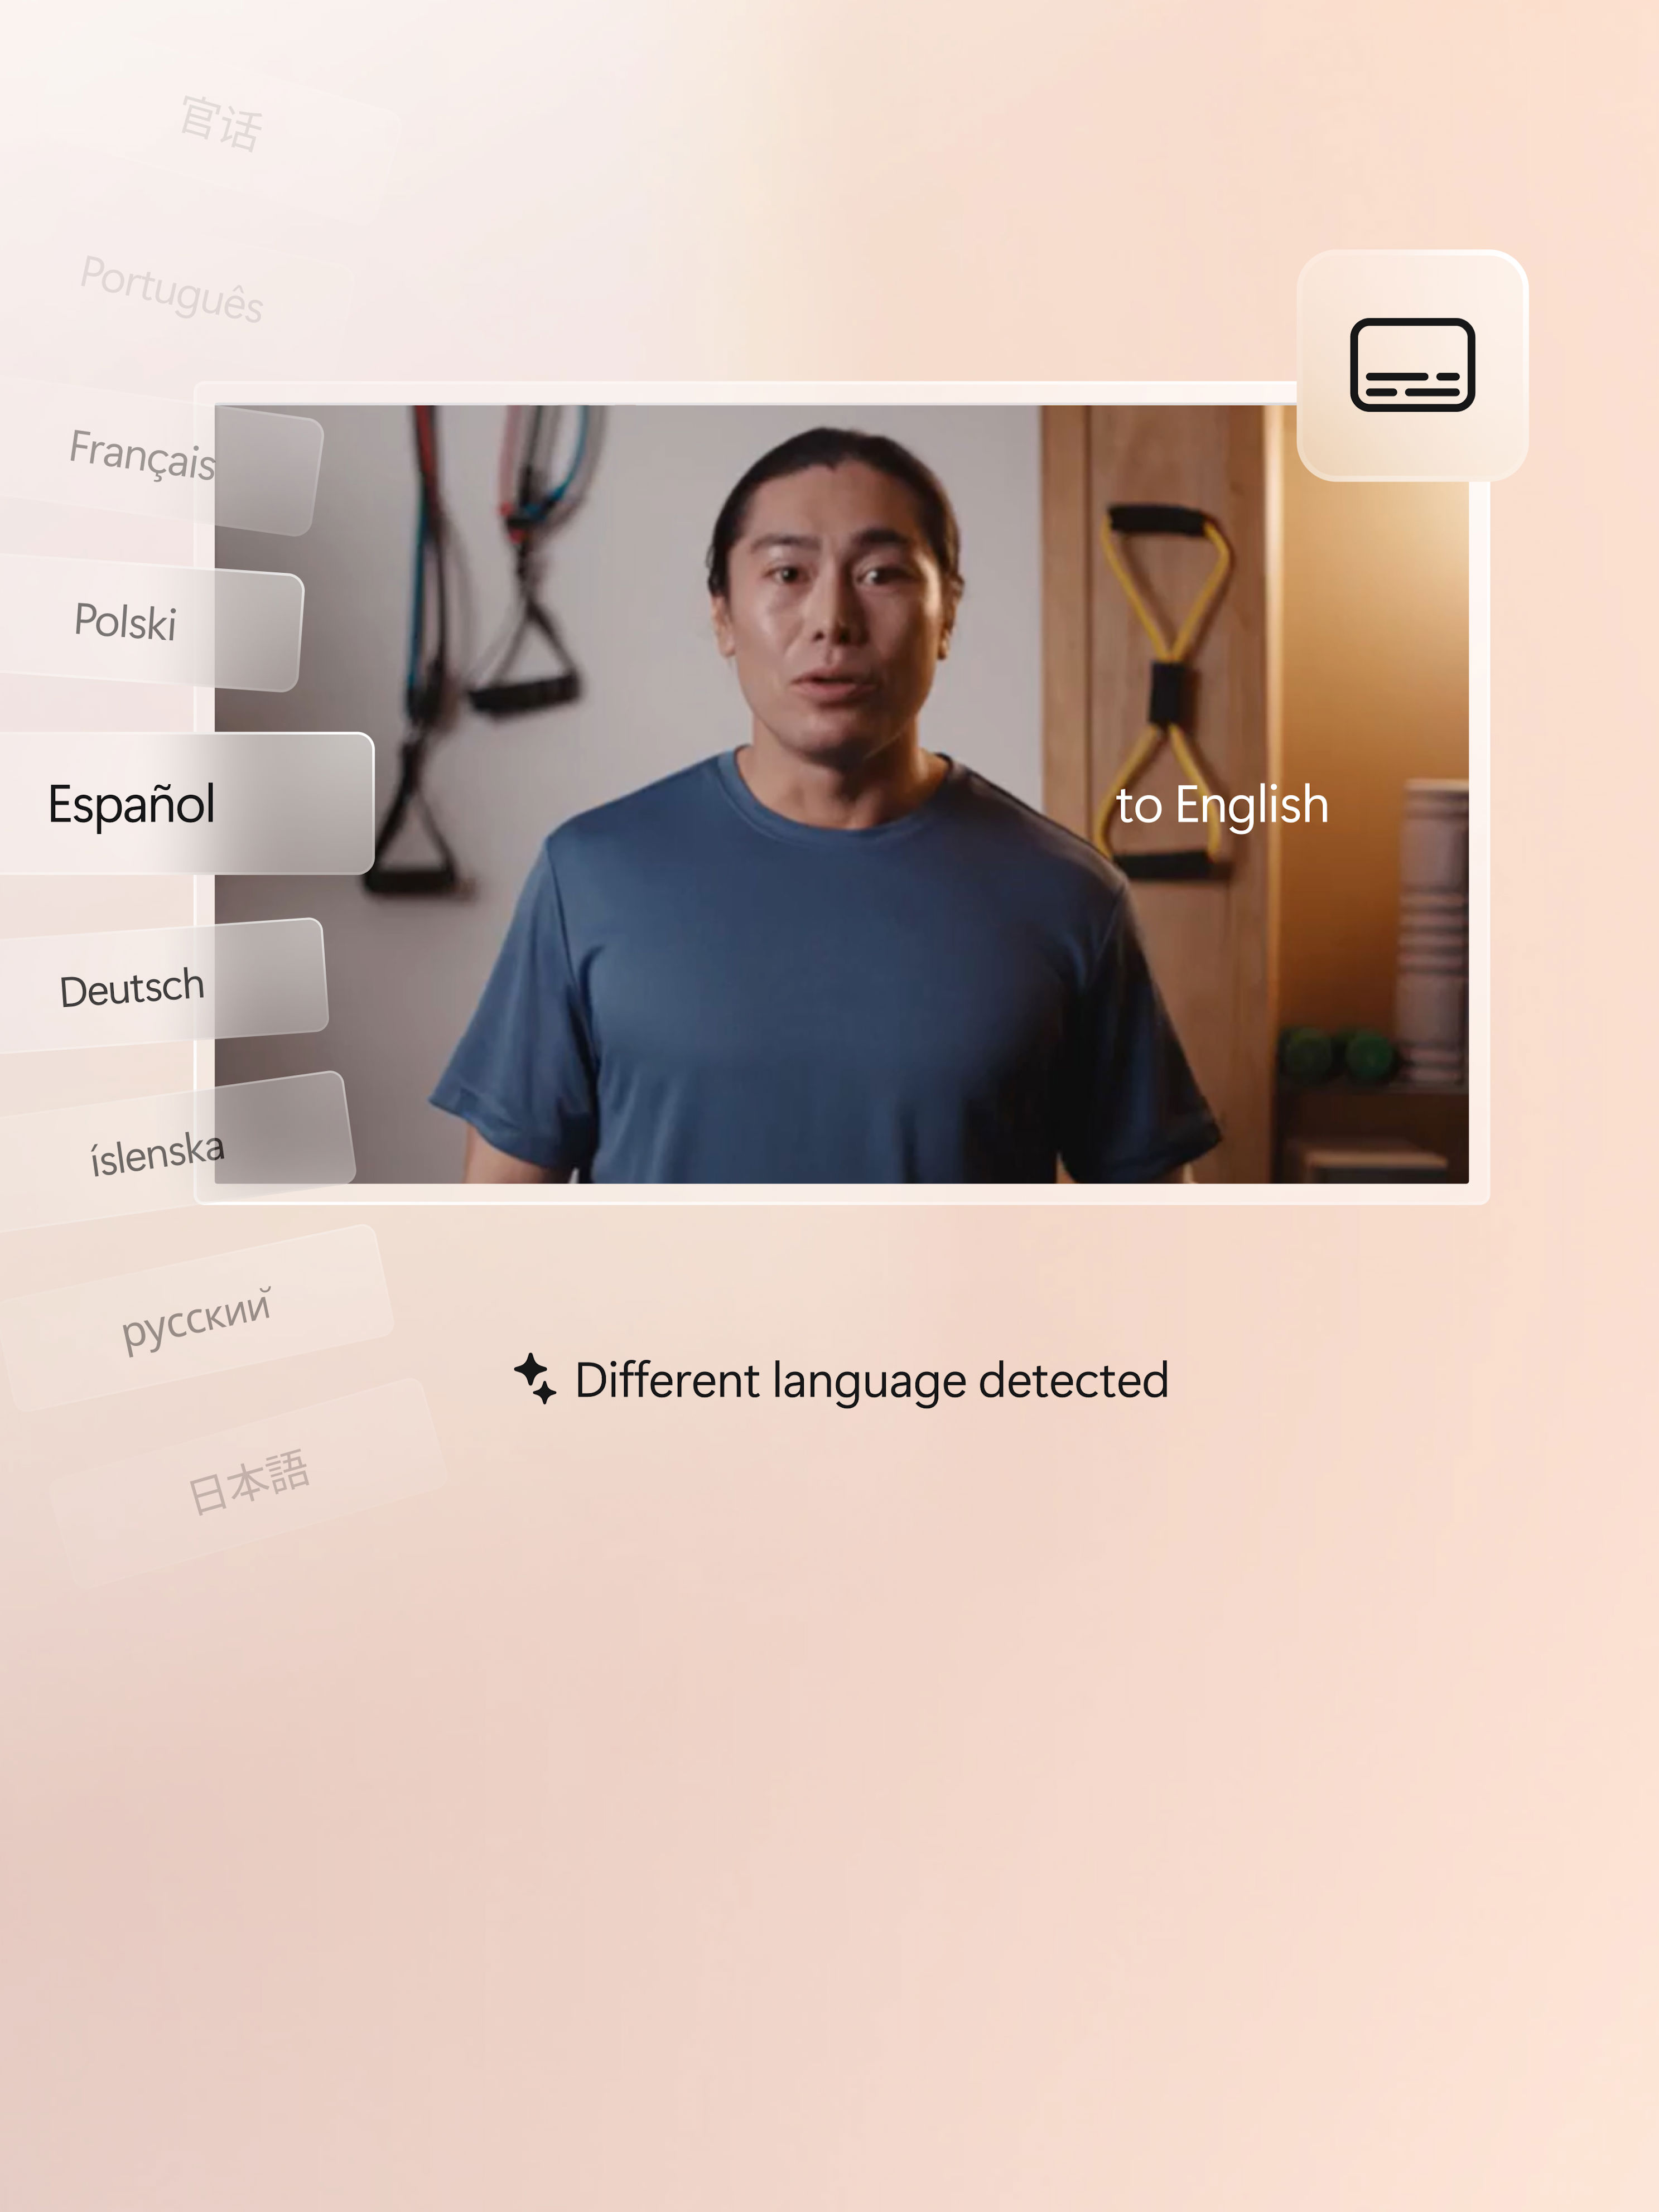 En man i ett videosamtal håller upp sin hand och flera olika språk visas runt omkring honom